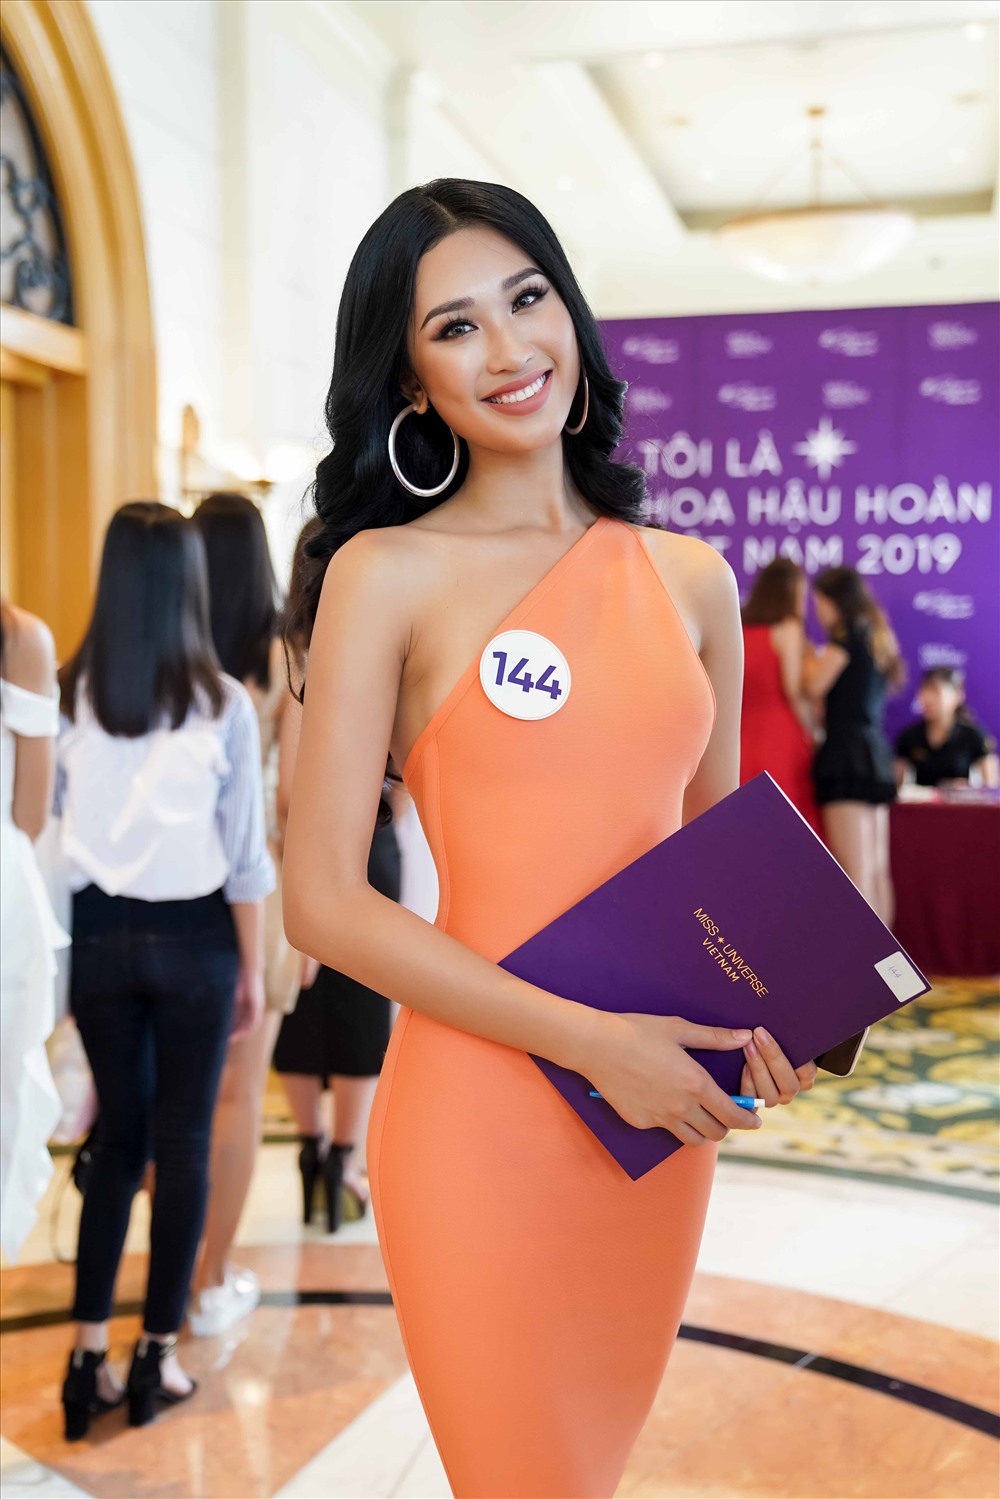 Phạm Anh Thư tự tin khi ghi danh tham dự cuộc thi “Hoa hậu Hoàn vũ Việt Nam 2019“. Ảnh: NVCC.